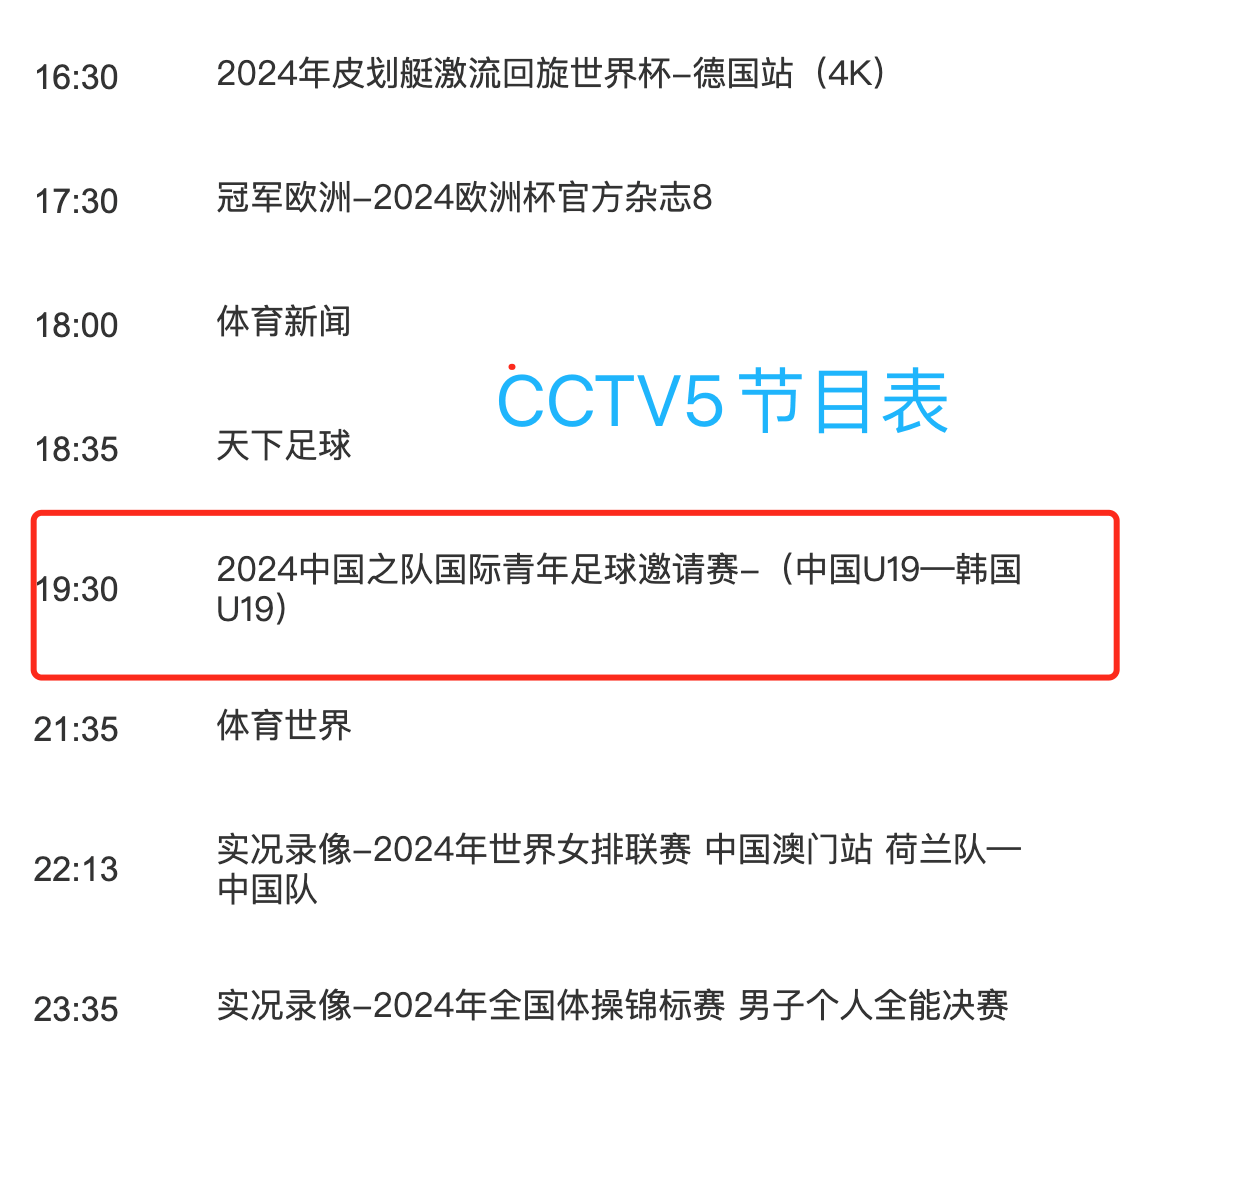 中央5台直播足球时间表:今晚cctv5直播国足对阵韩国,争冠之战!